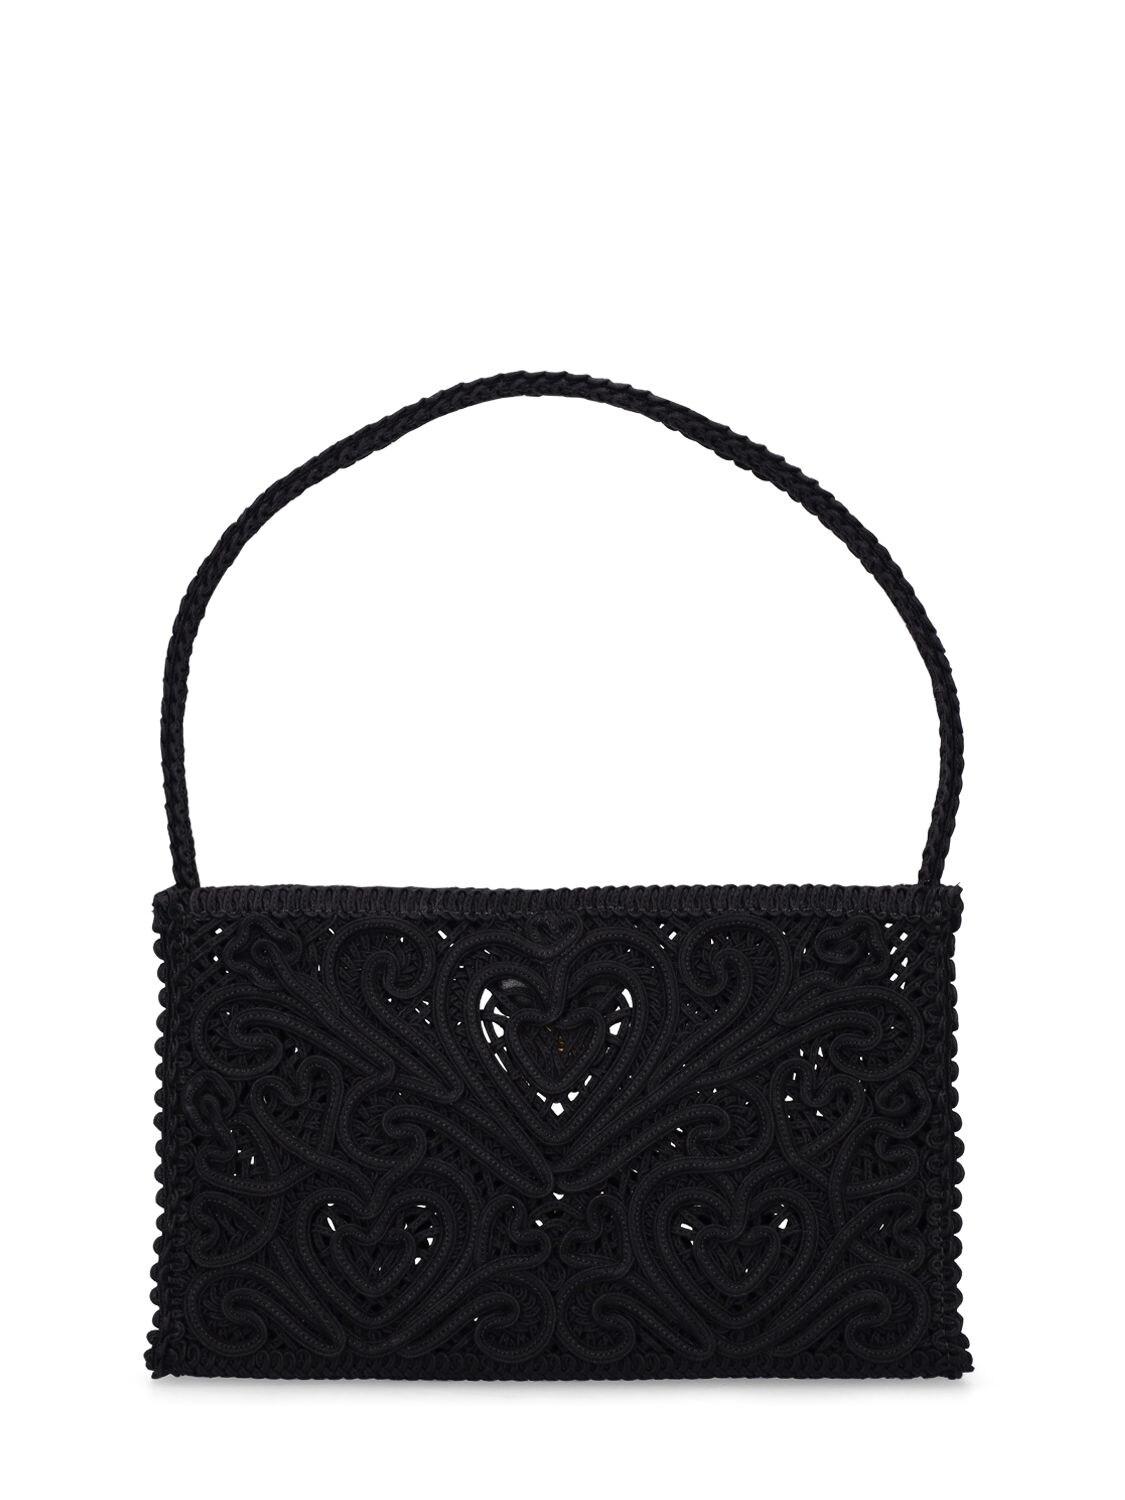 Dolce & Gabbana Mini Handtasche Aus Macramé beatrice in Schwarz Damen Taschen Tote Taschen 